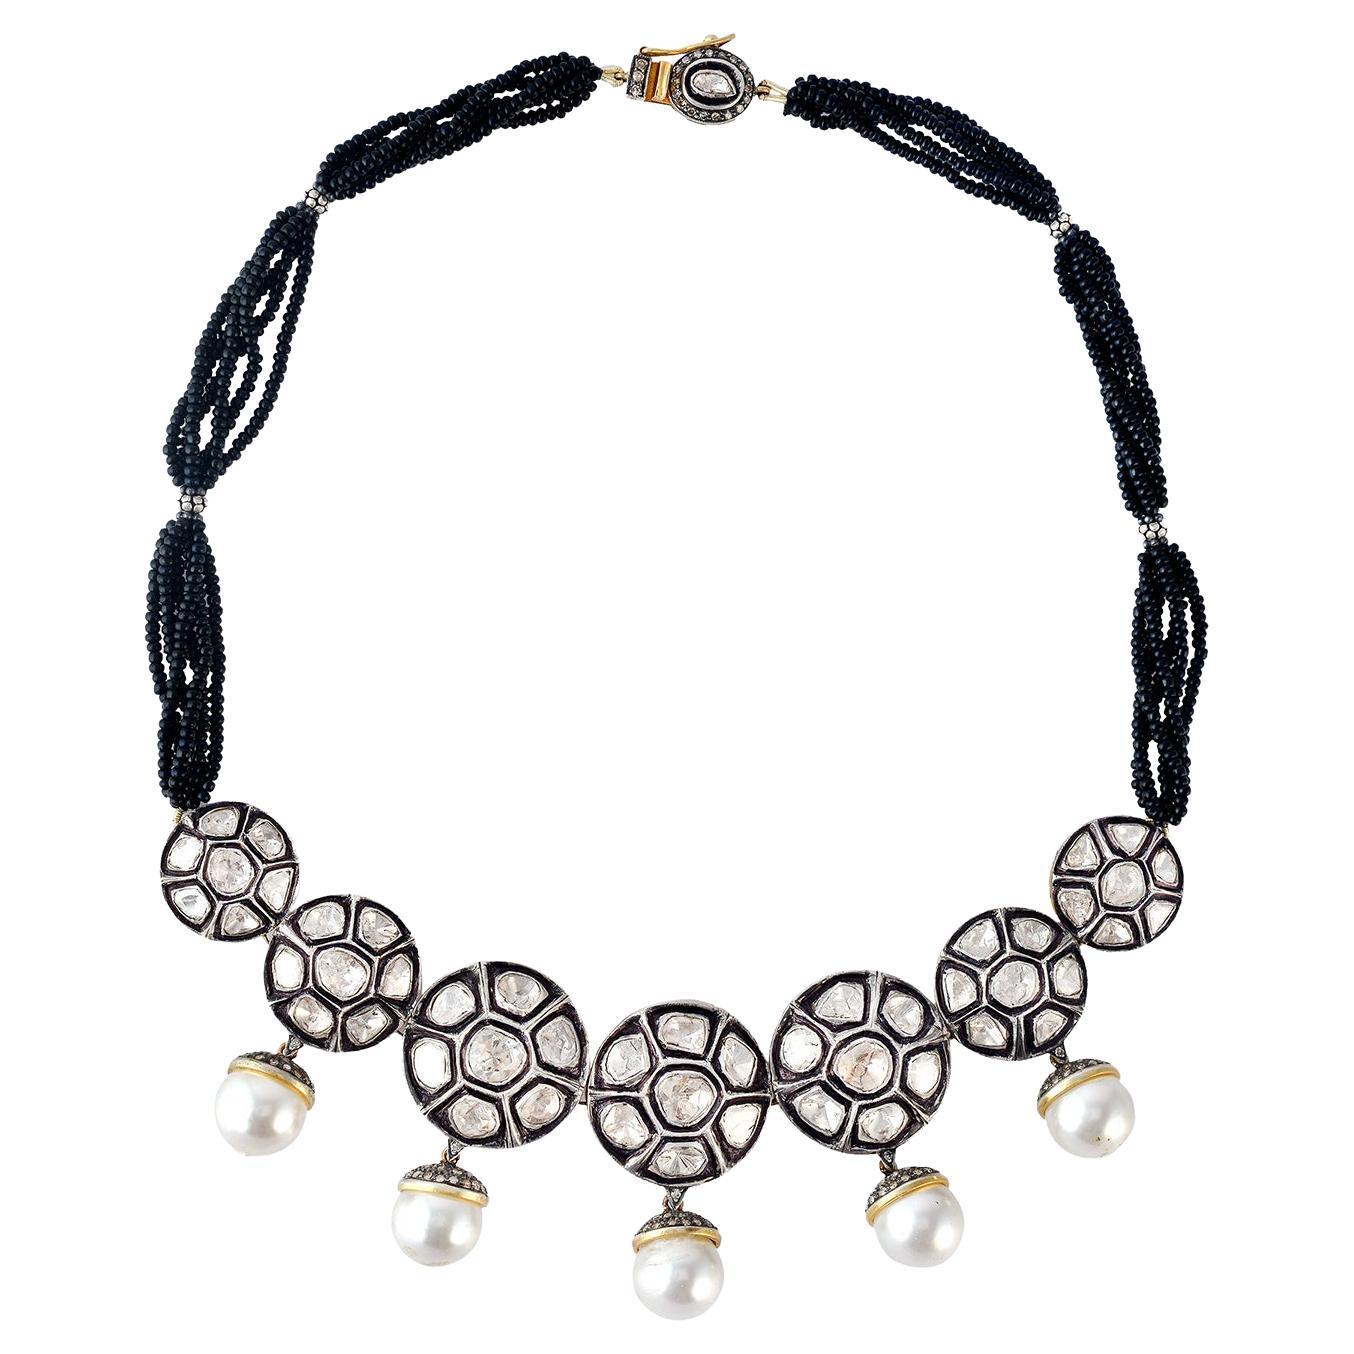 Polki-Halskette aus Gold und Silber mit Diamanten und Perlen und schwarzem Onyx